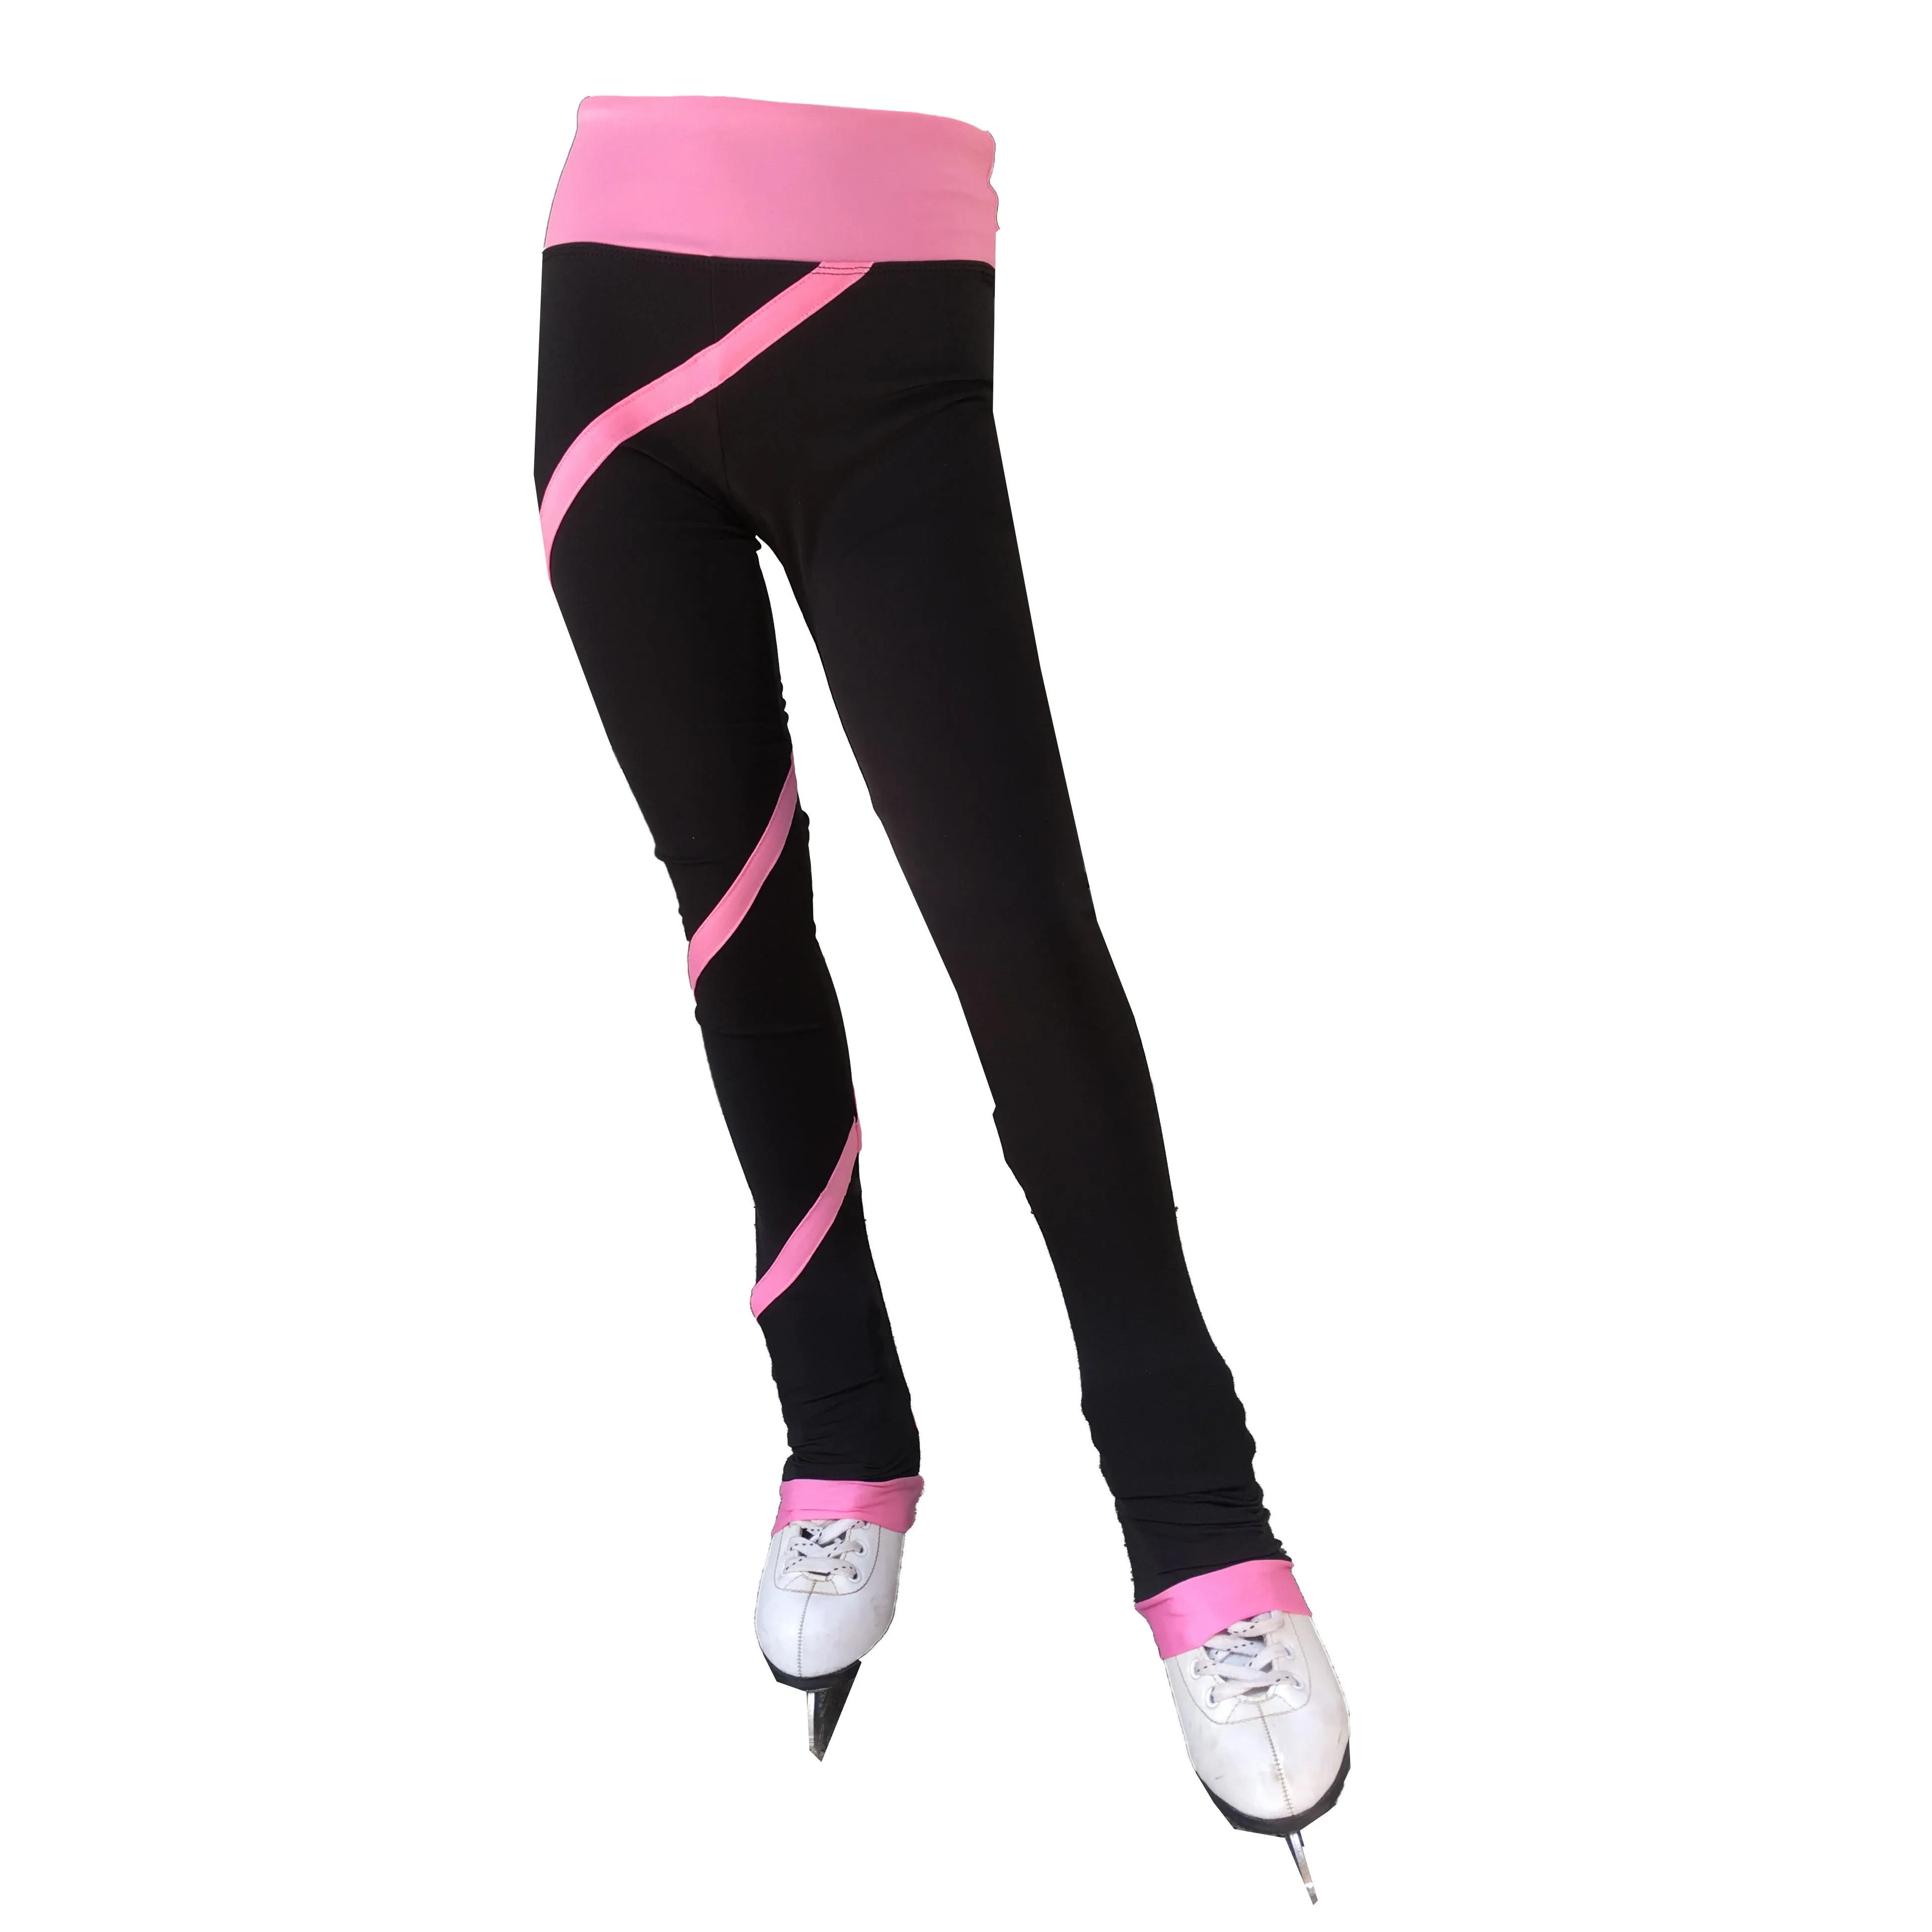 Штаны для фигурного катания стрейч пряжа розовые линии костюмы для катания на коньках тренировочные костюмы для девочек